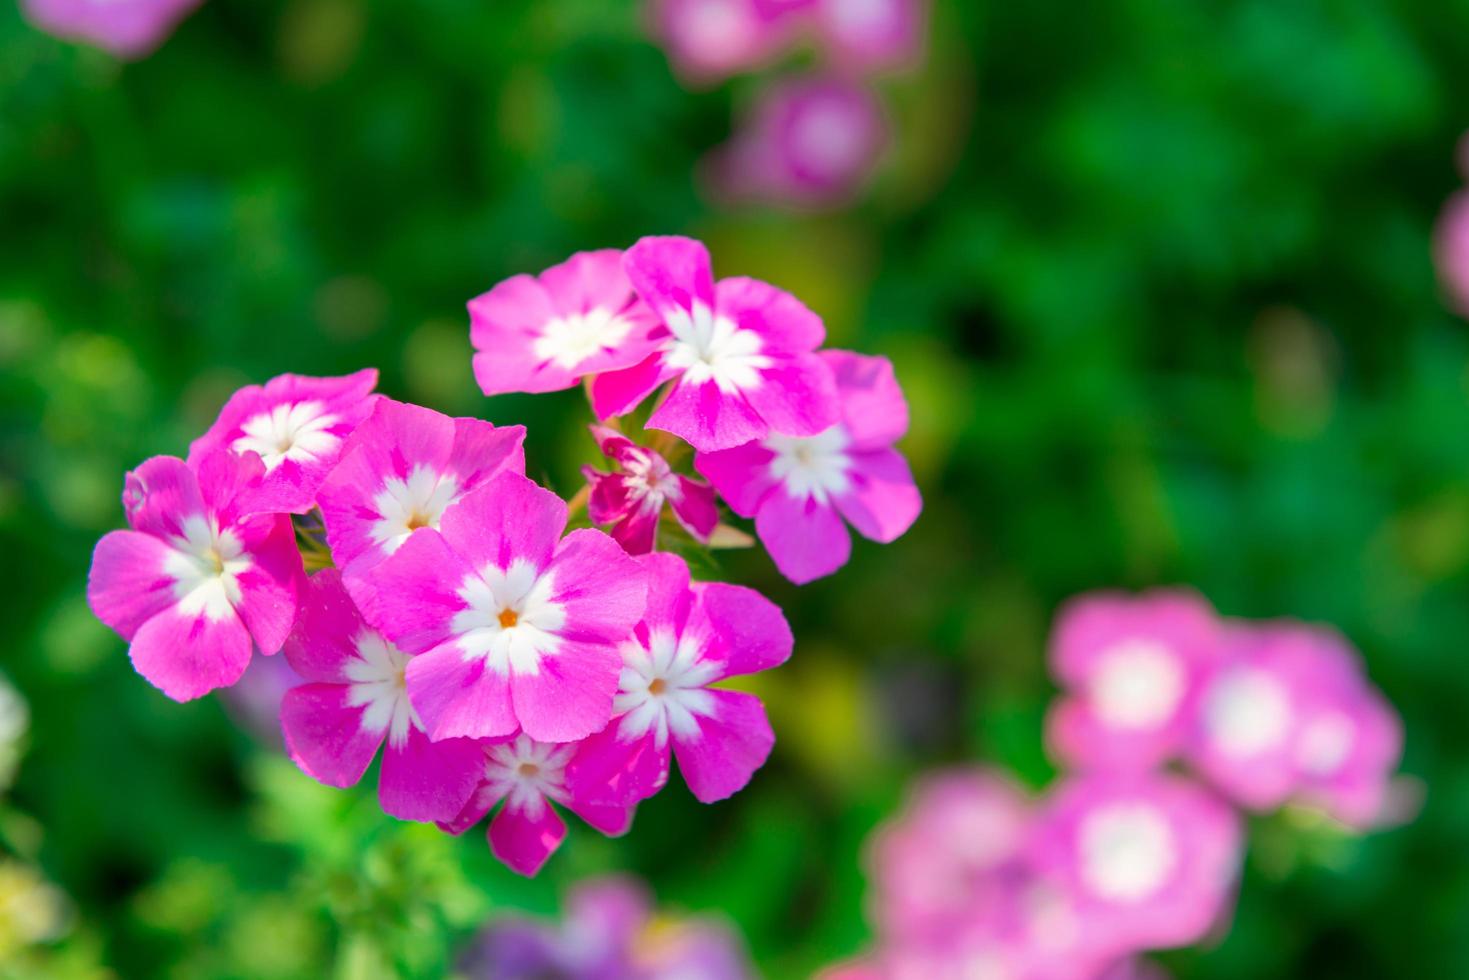 närbild rosa pelargonblommor i trädgården foto